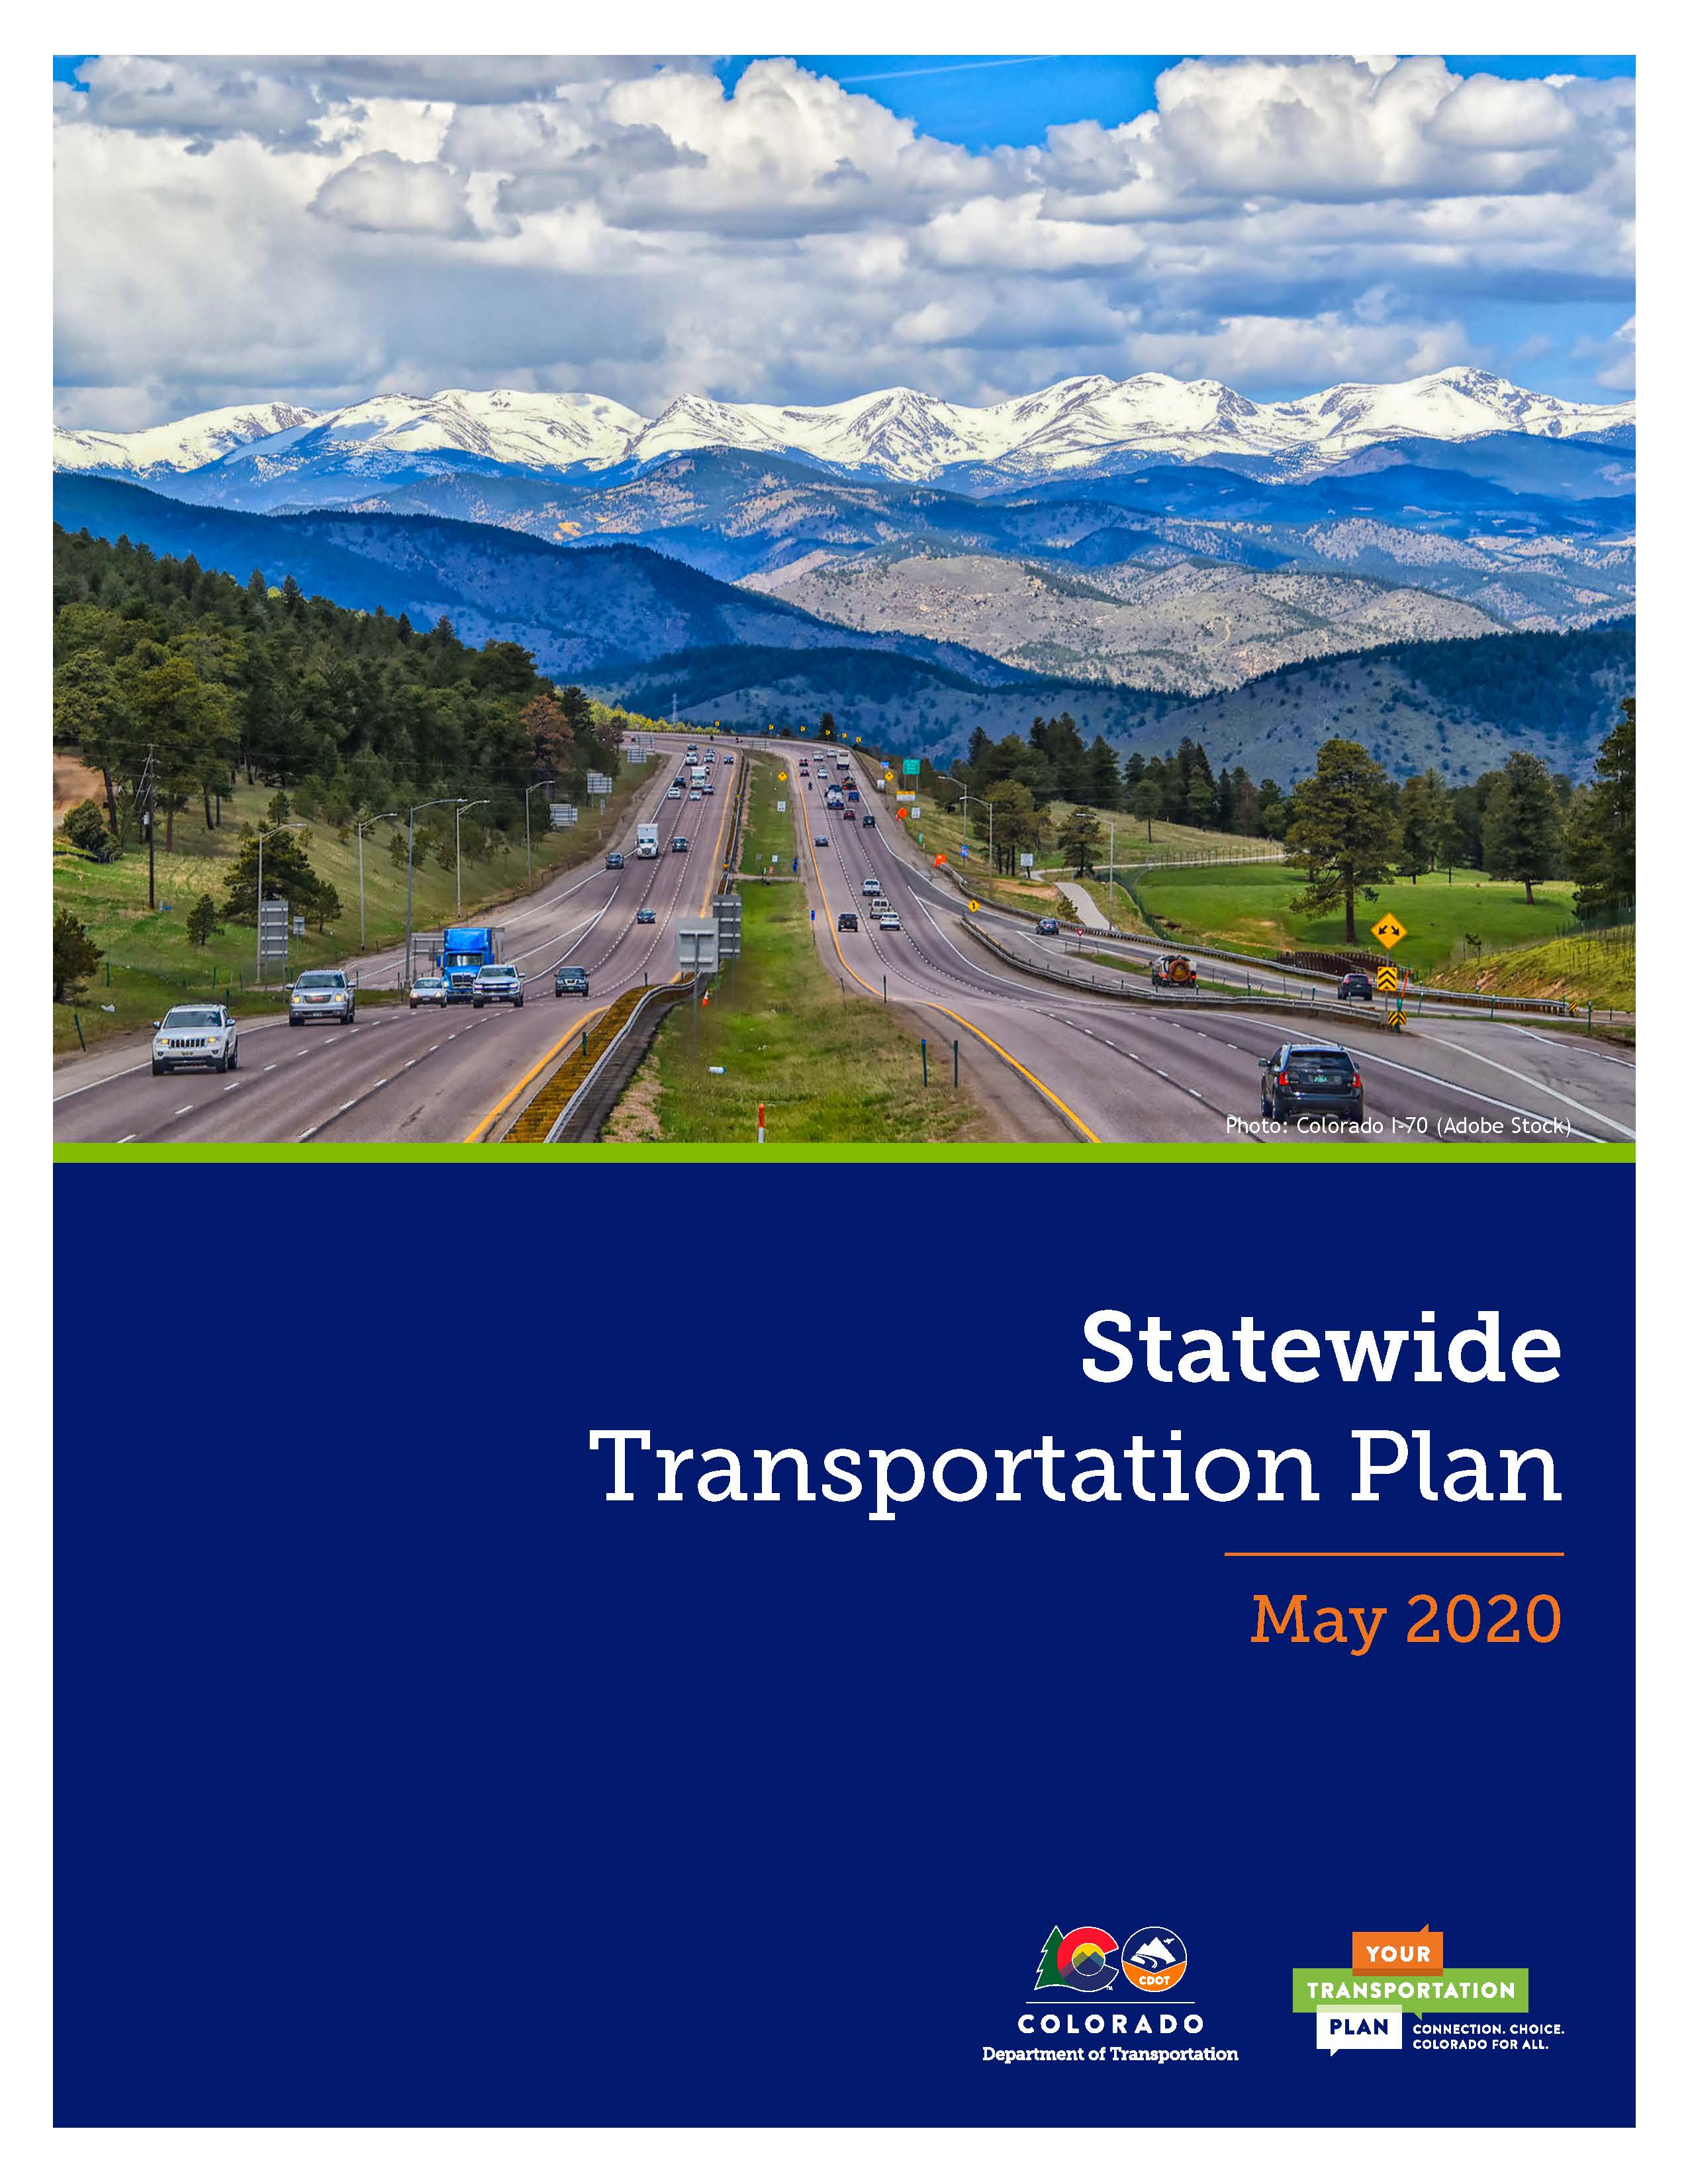 Statewide Transportation Plan.jpg detail image